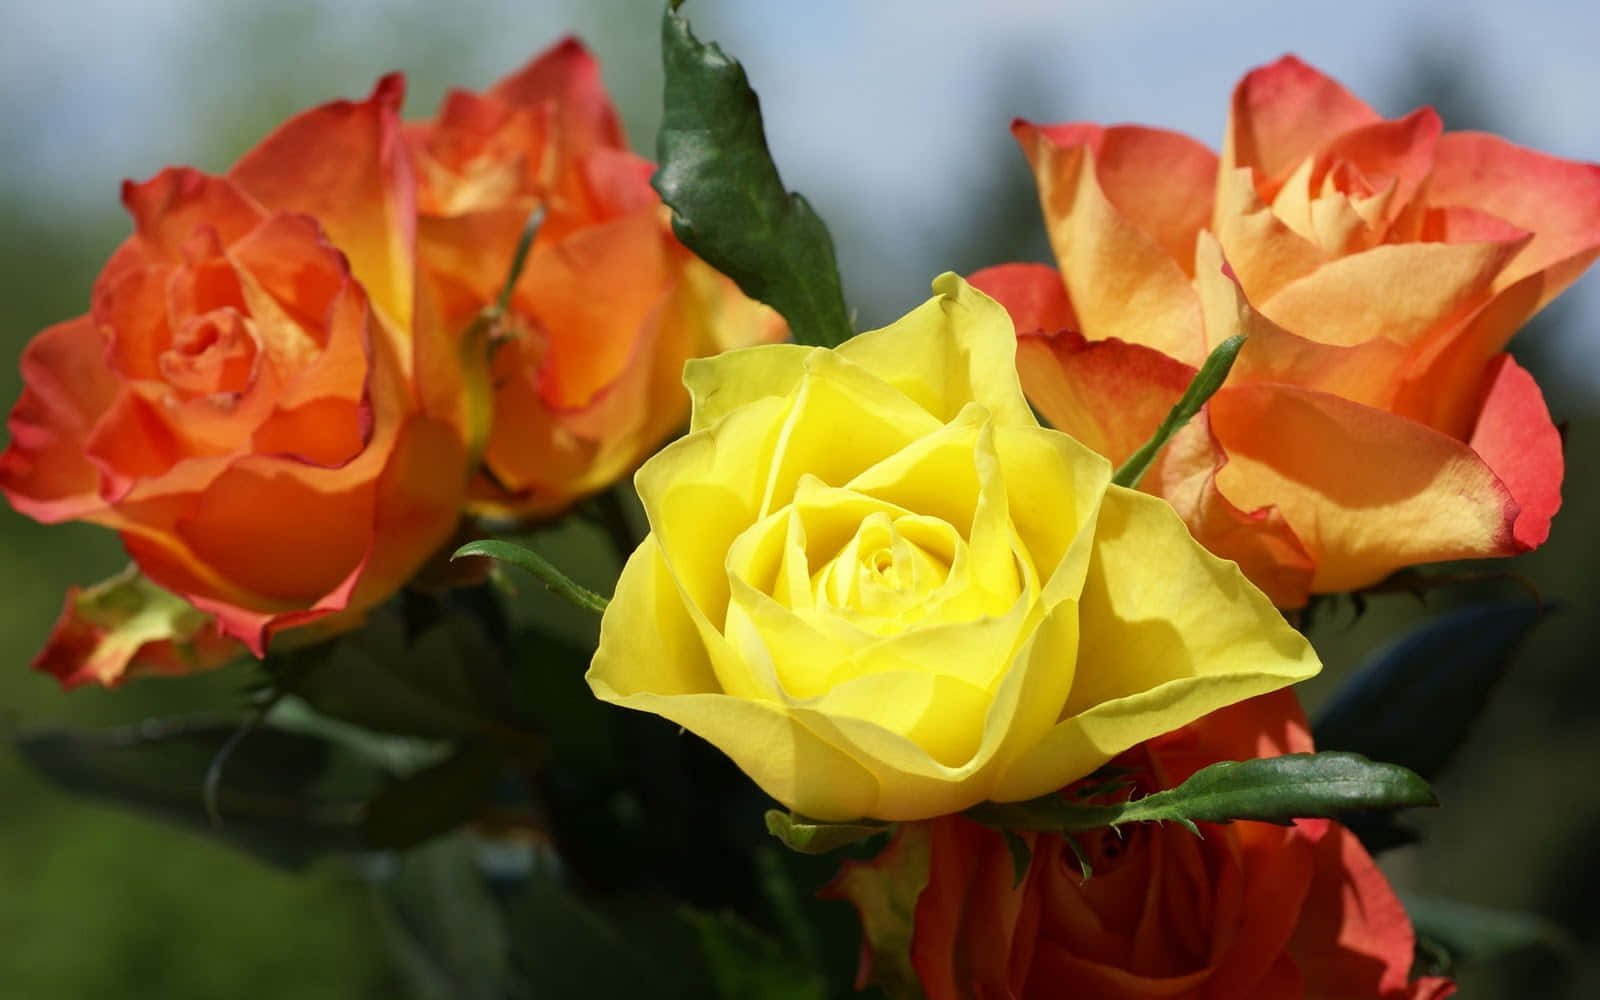 Imagende Flores De Rosas De Jardín En Color Naranja Y Amarillo.